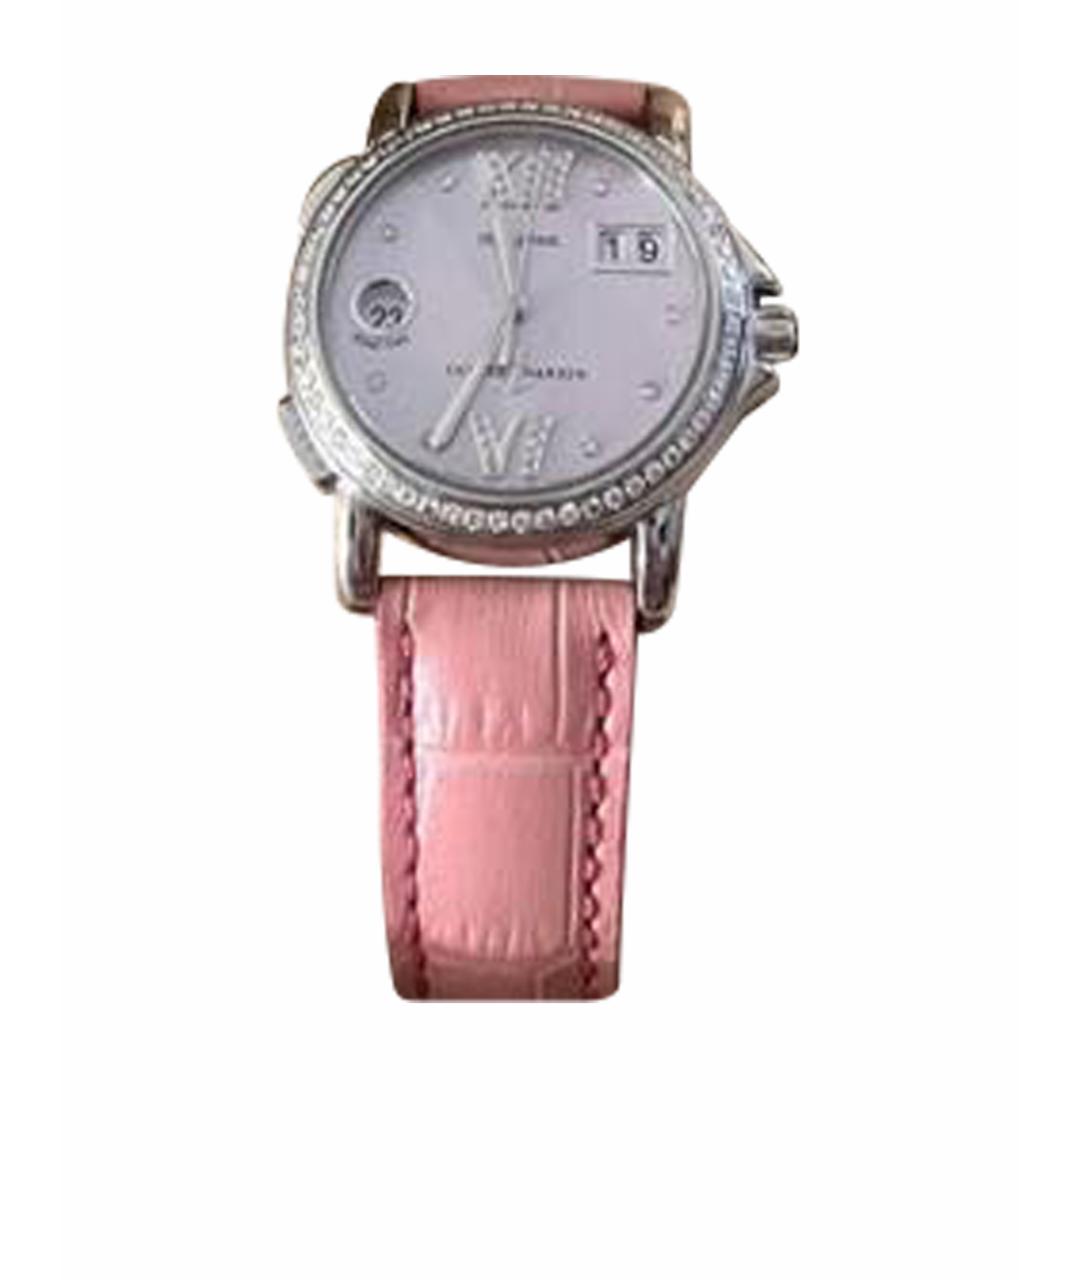 Ulysse Nardin Розовые металлические часы, фото 1